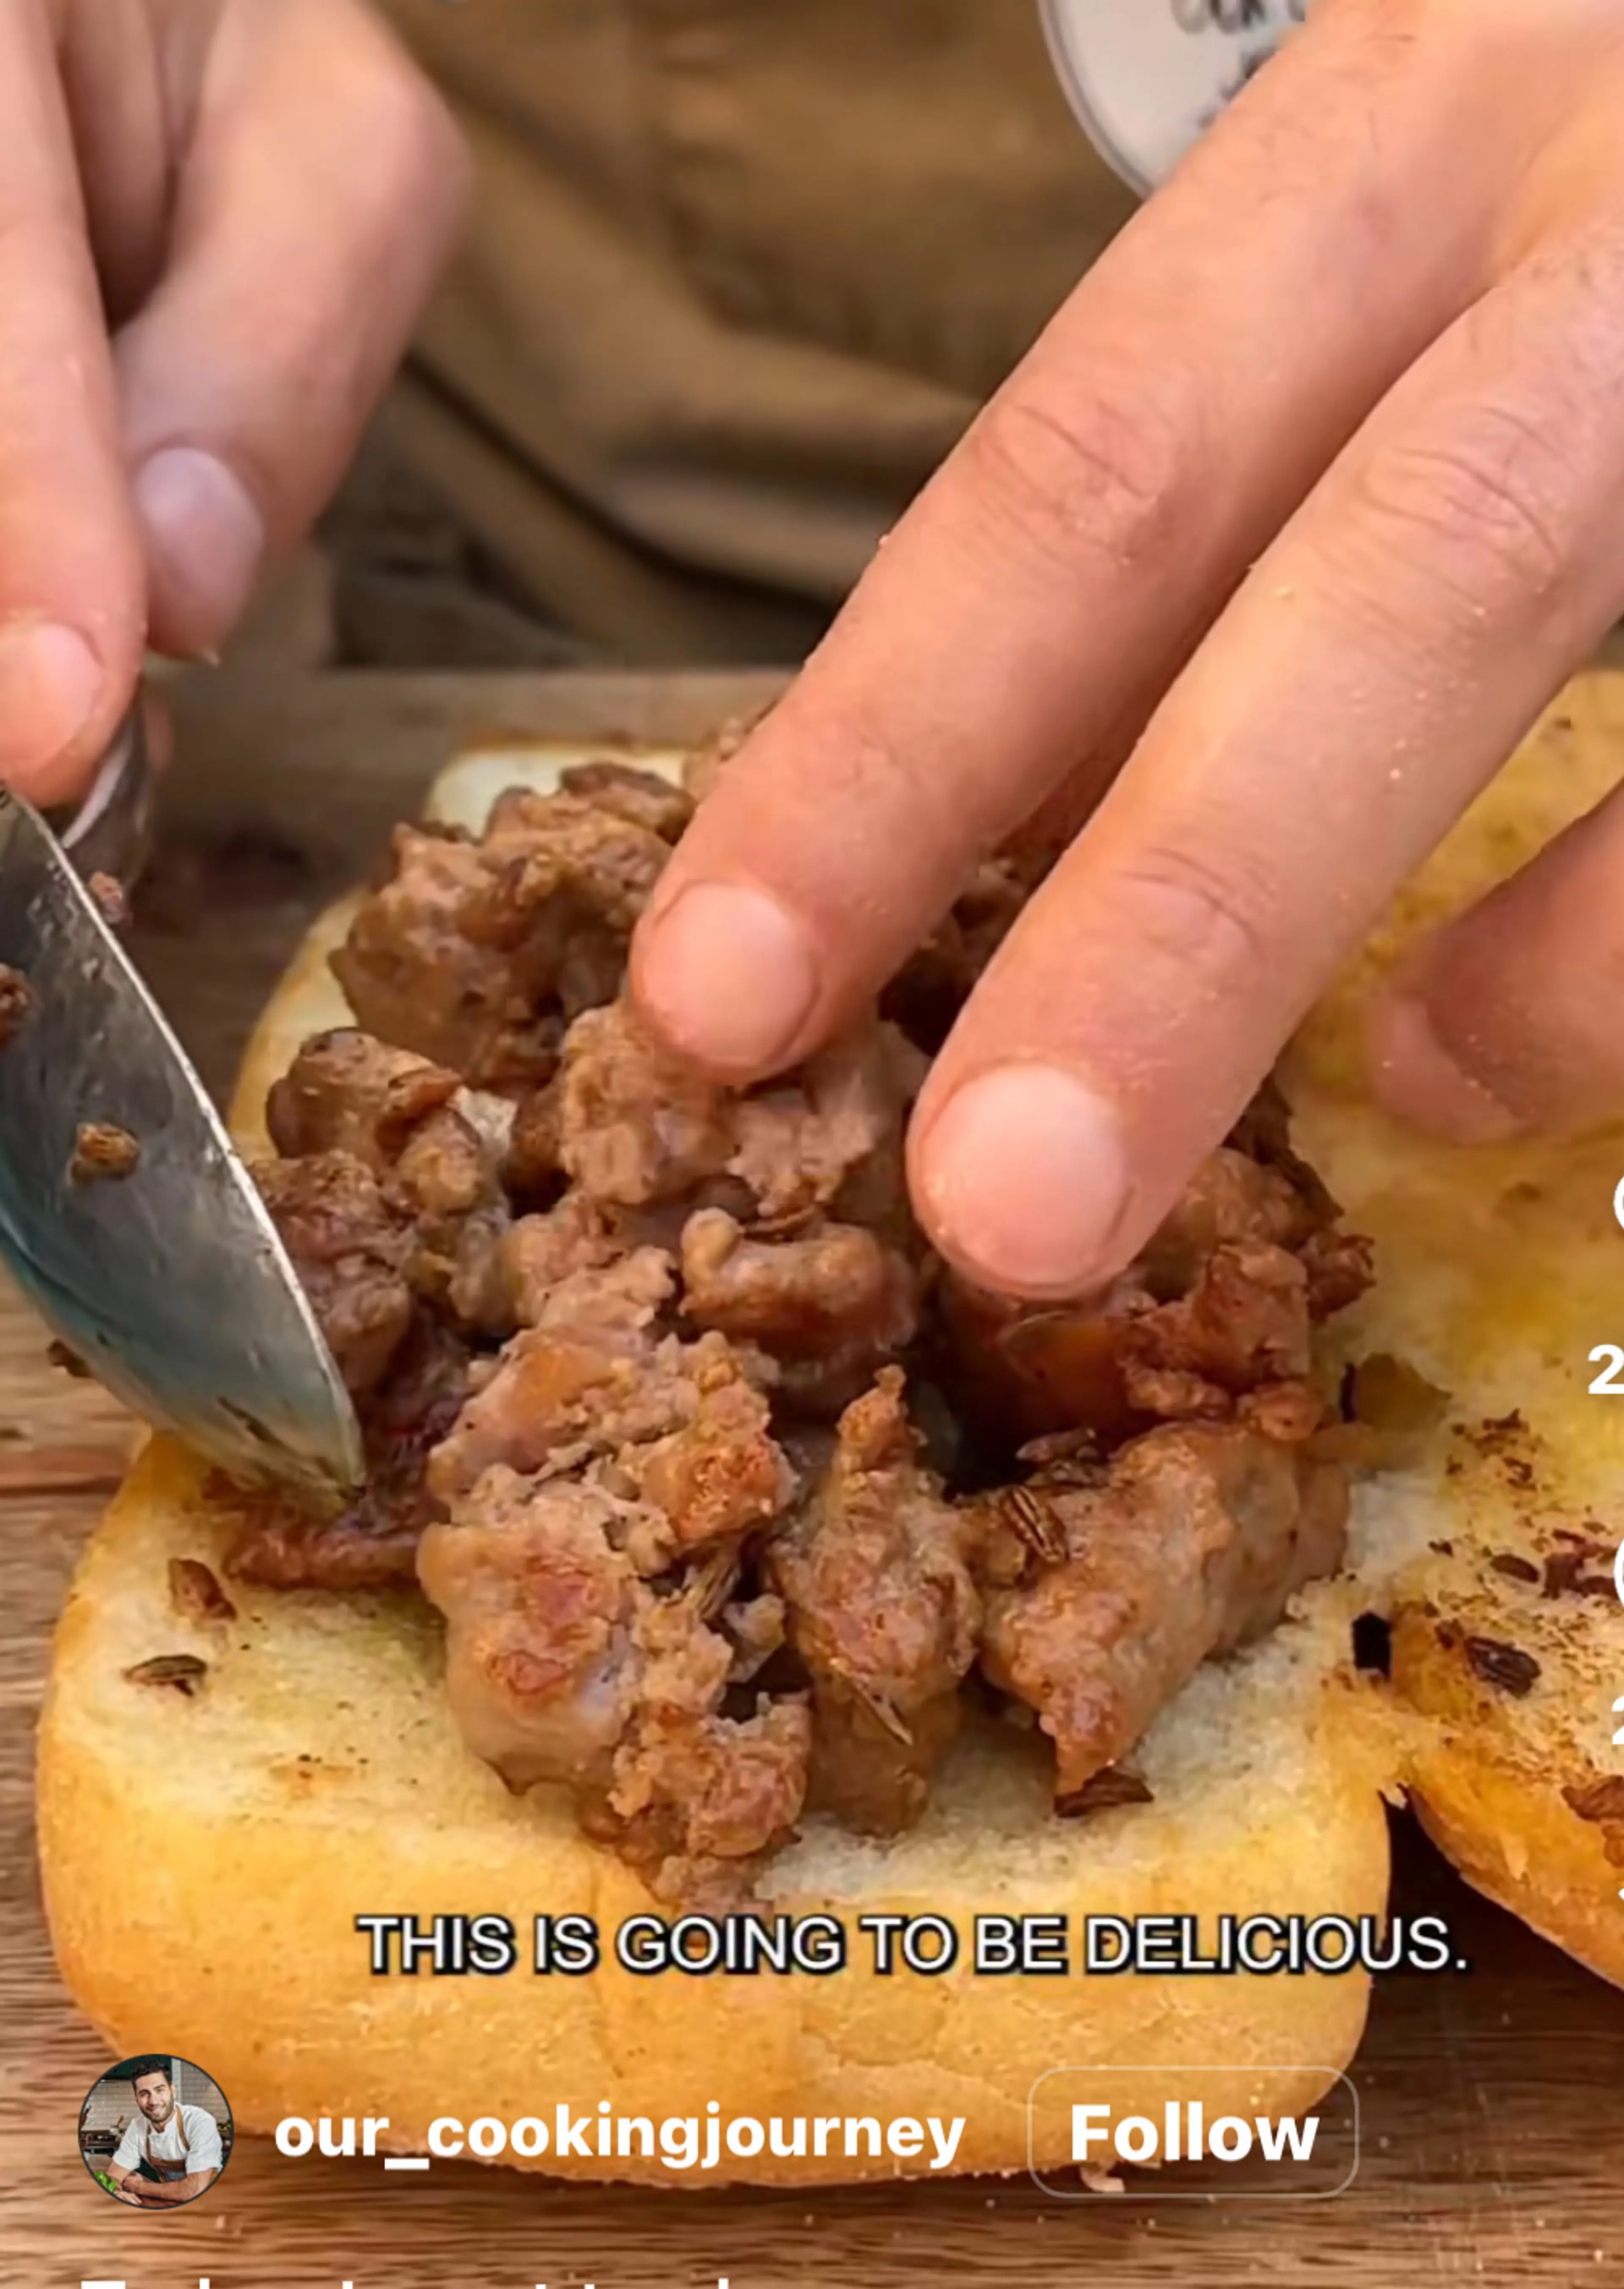 Panino Con purpuzzo- Sardinian Sausage Sandwich